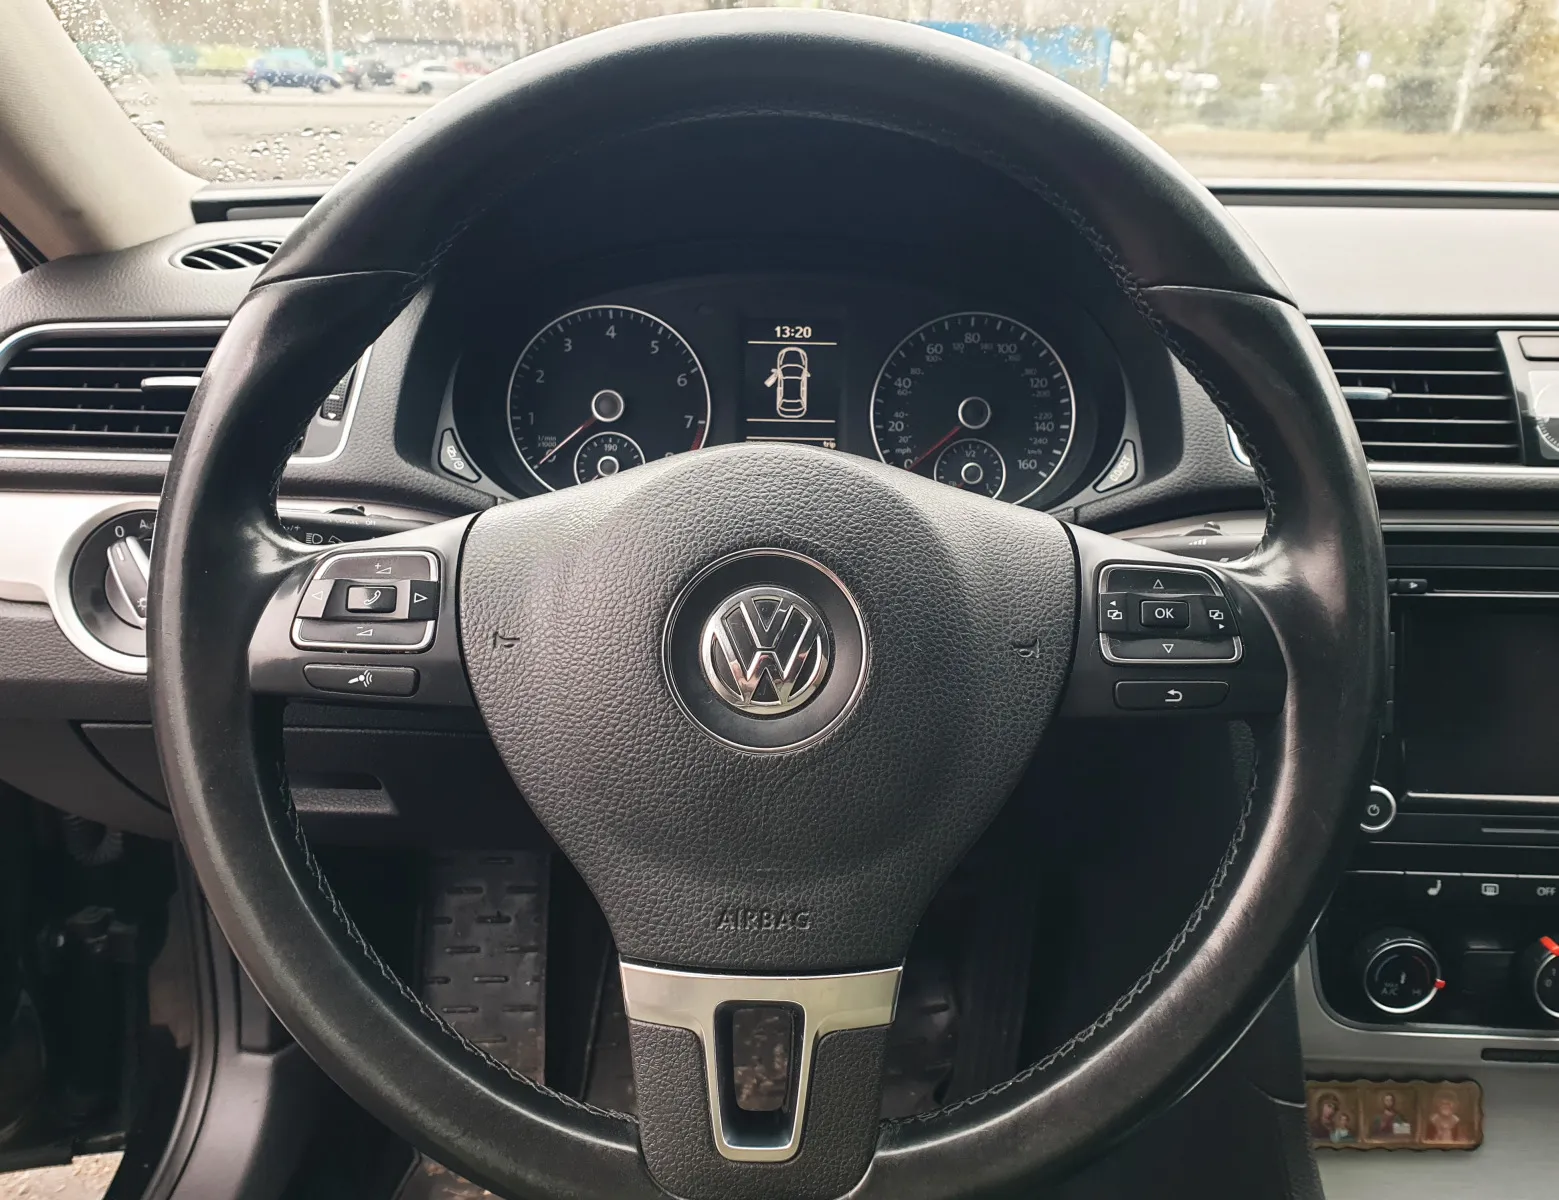 Volkswagen Passat B7 2013 купити авто в лізинг